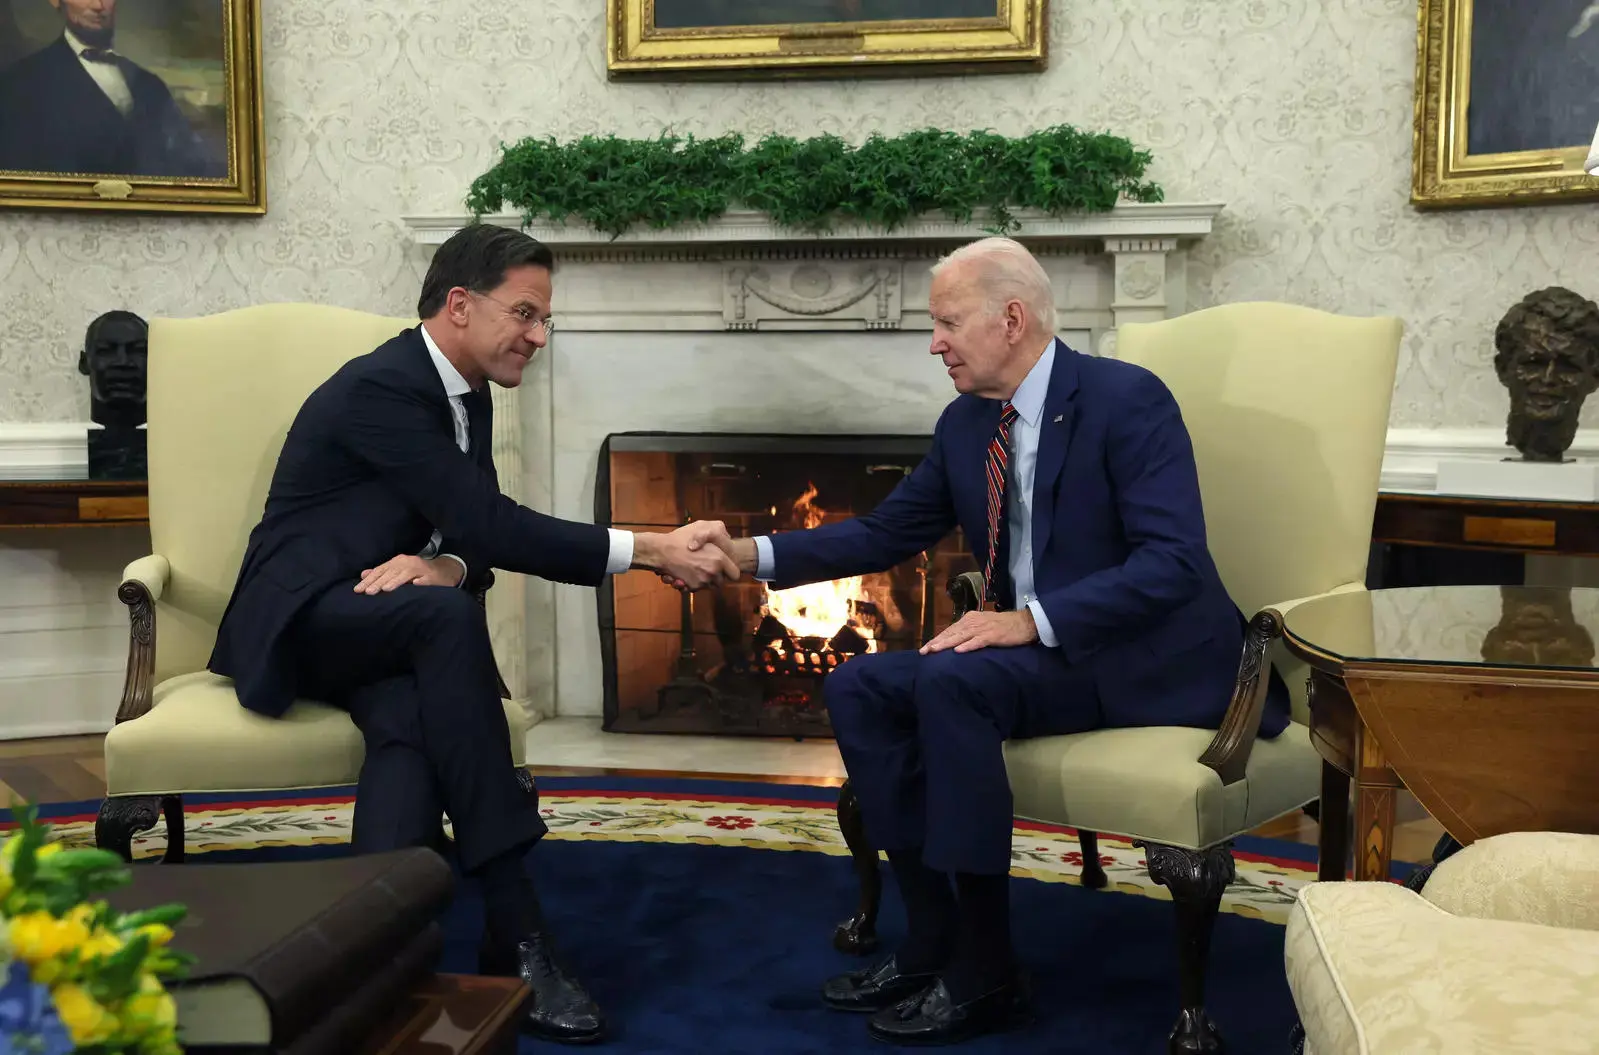 US President Joe Biden and Prime Minister of the Netherlands Mark Rutte